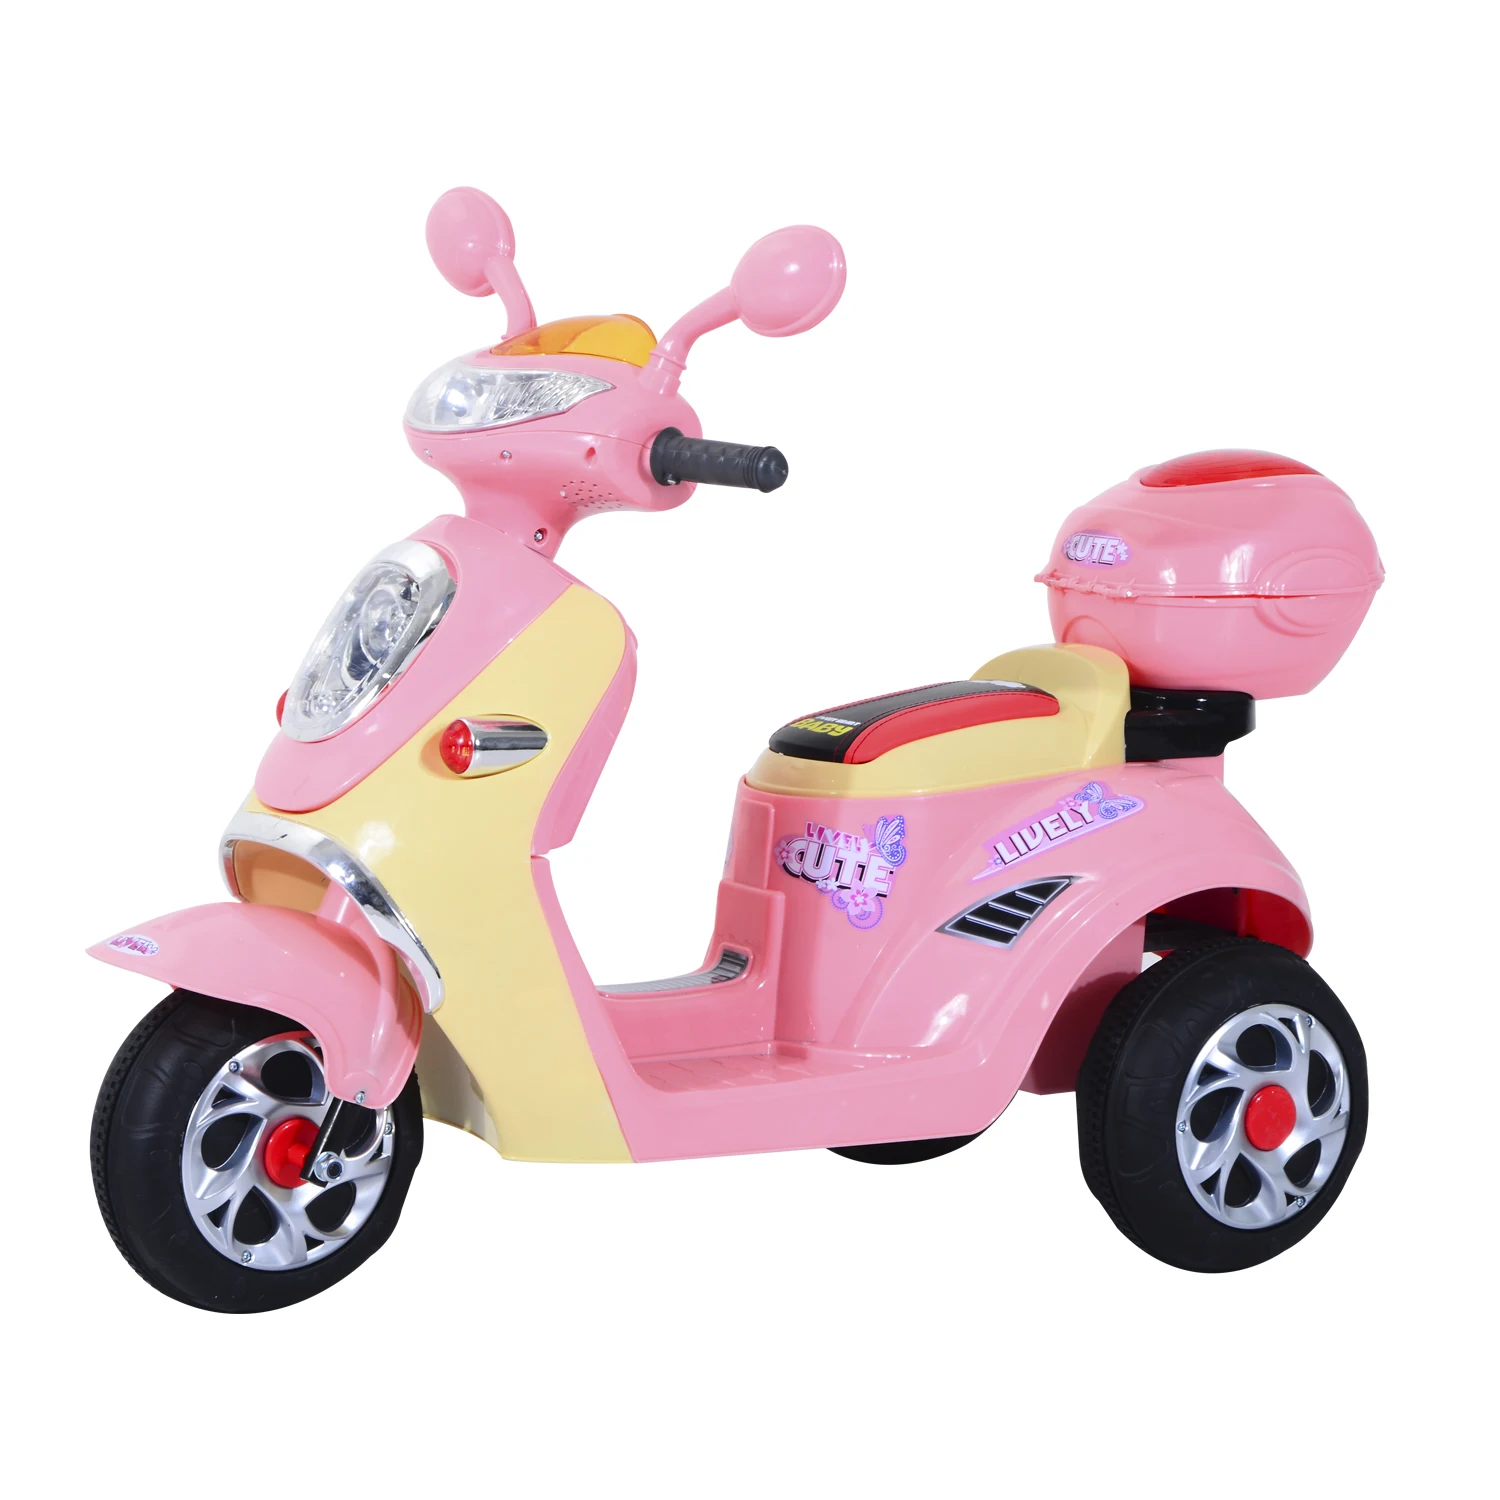 HOMCOM Coche Triciclo Moto Eléctrica Infantil Correpasillos a Batería Niños 3 8 años 6V Metal + PP 108x51x75cm Rosa|Coches para montarse| - AliExpress